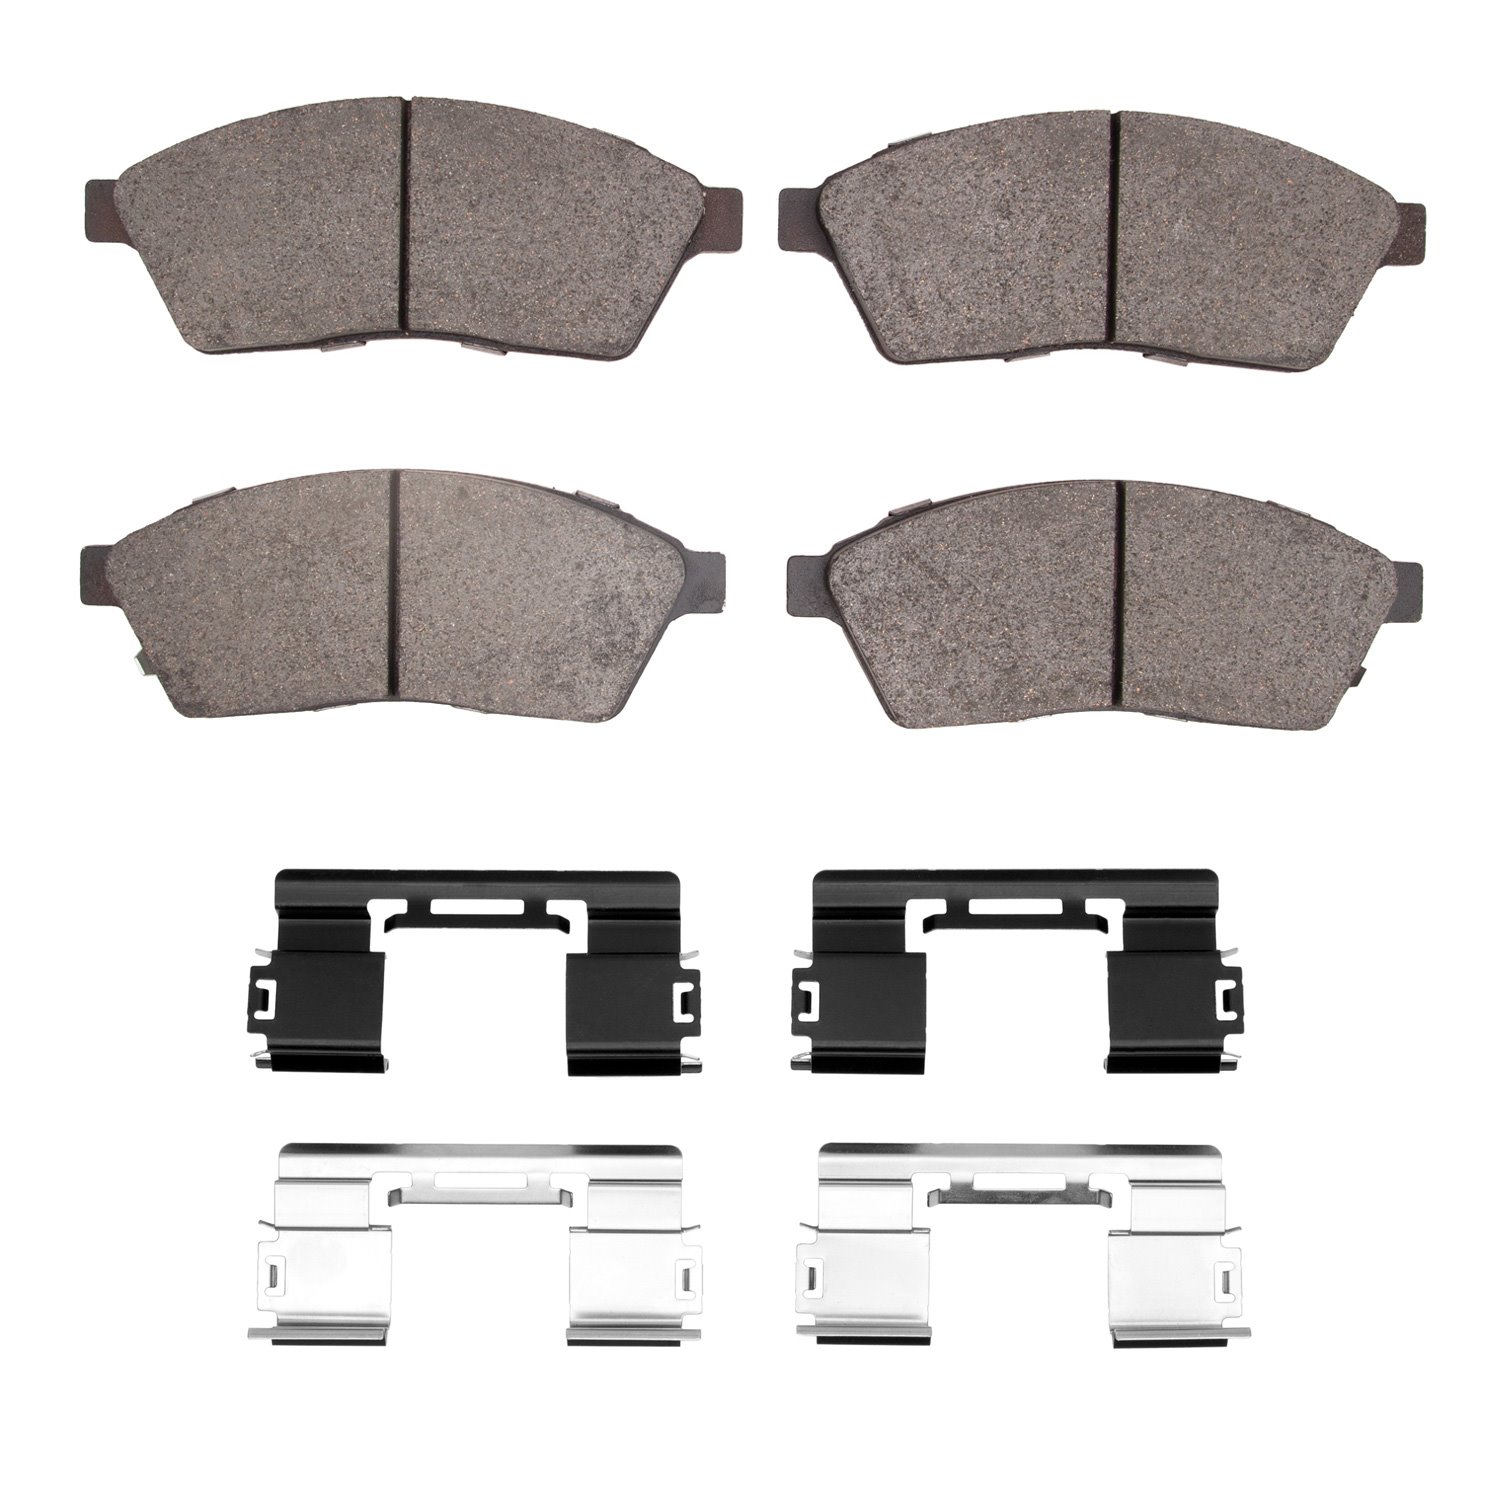 1310-1422-01 3000-Series Ceramic Brake Pads & Hardware Kit, 2010-2016 GM, Position: Front